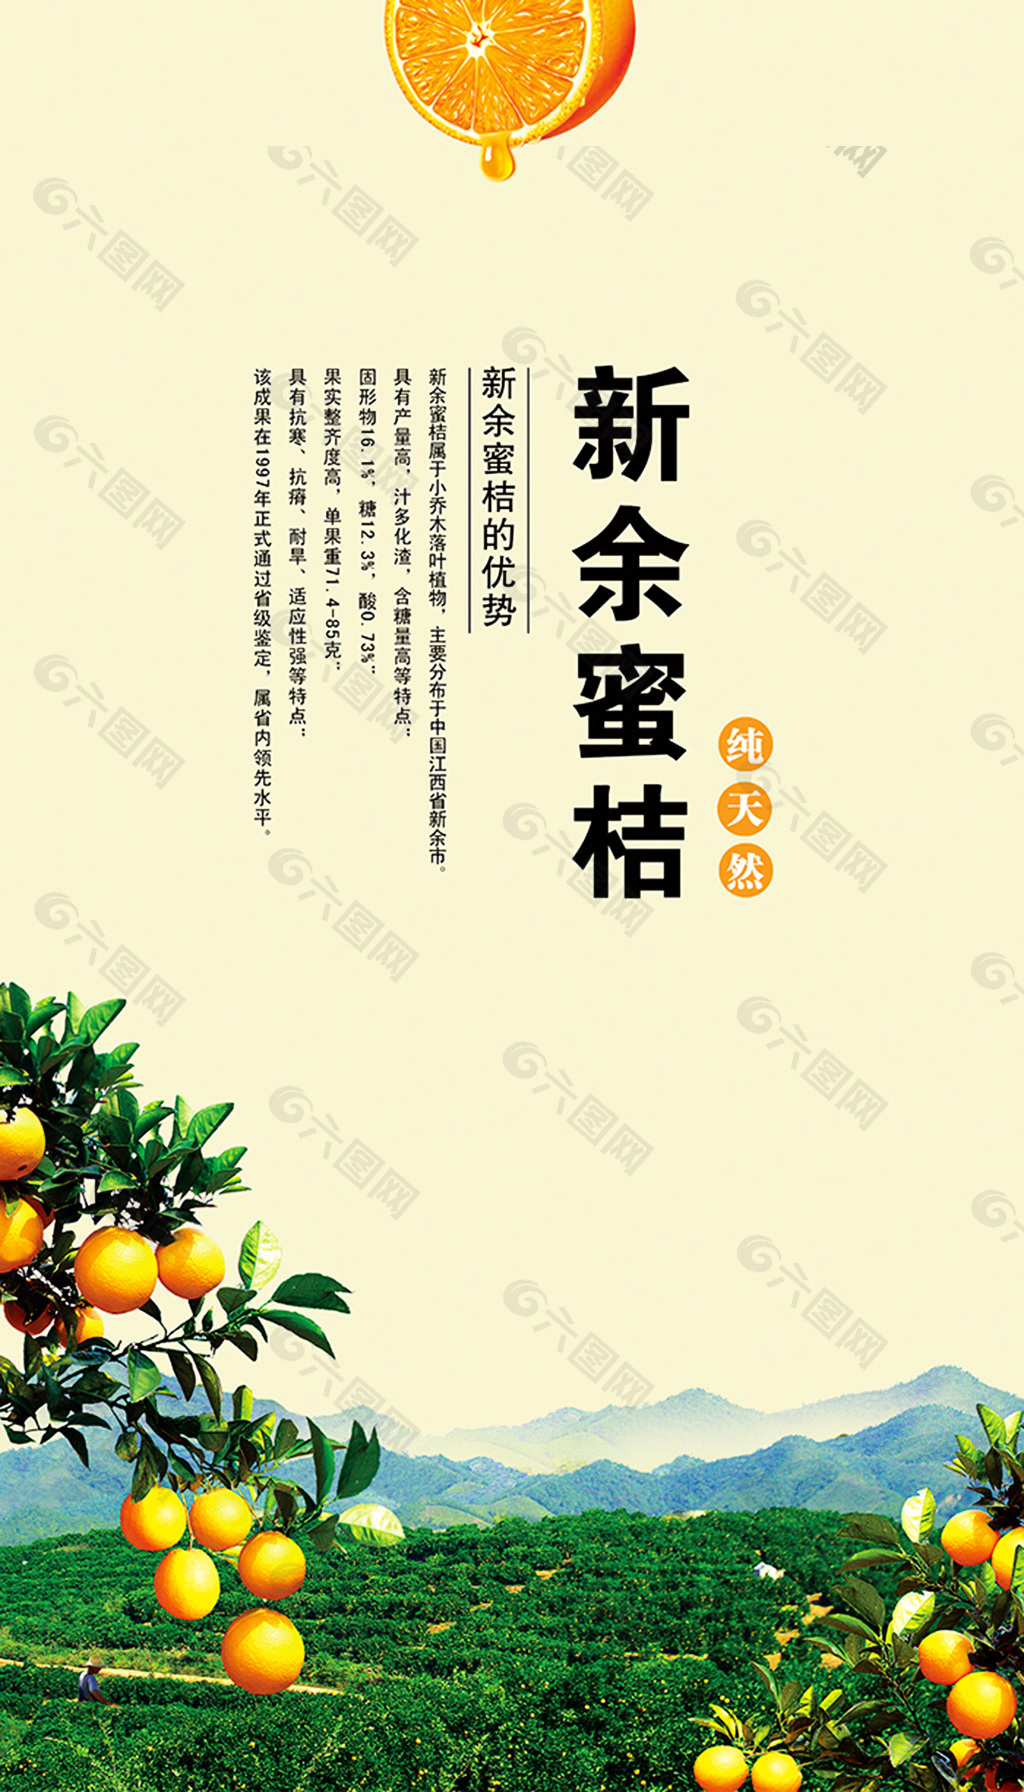 蜜桔水果海报素材平面广告素材免费下载(图片编号:6188756)